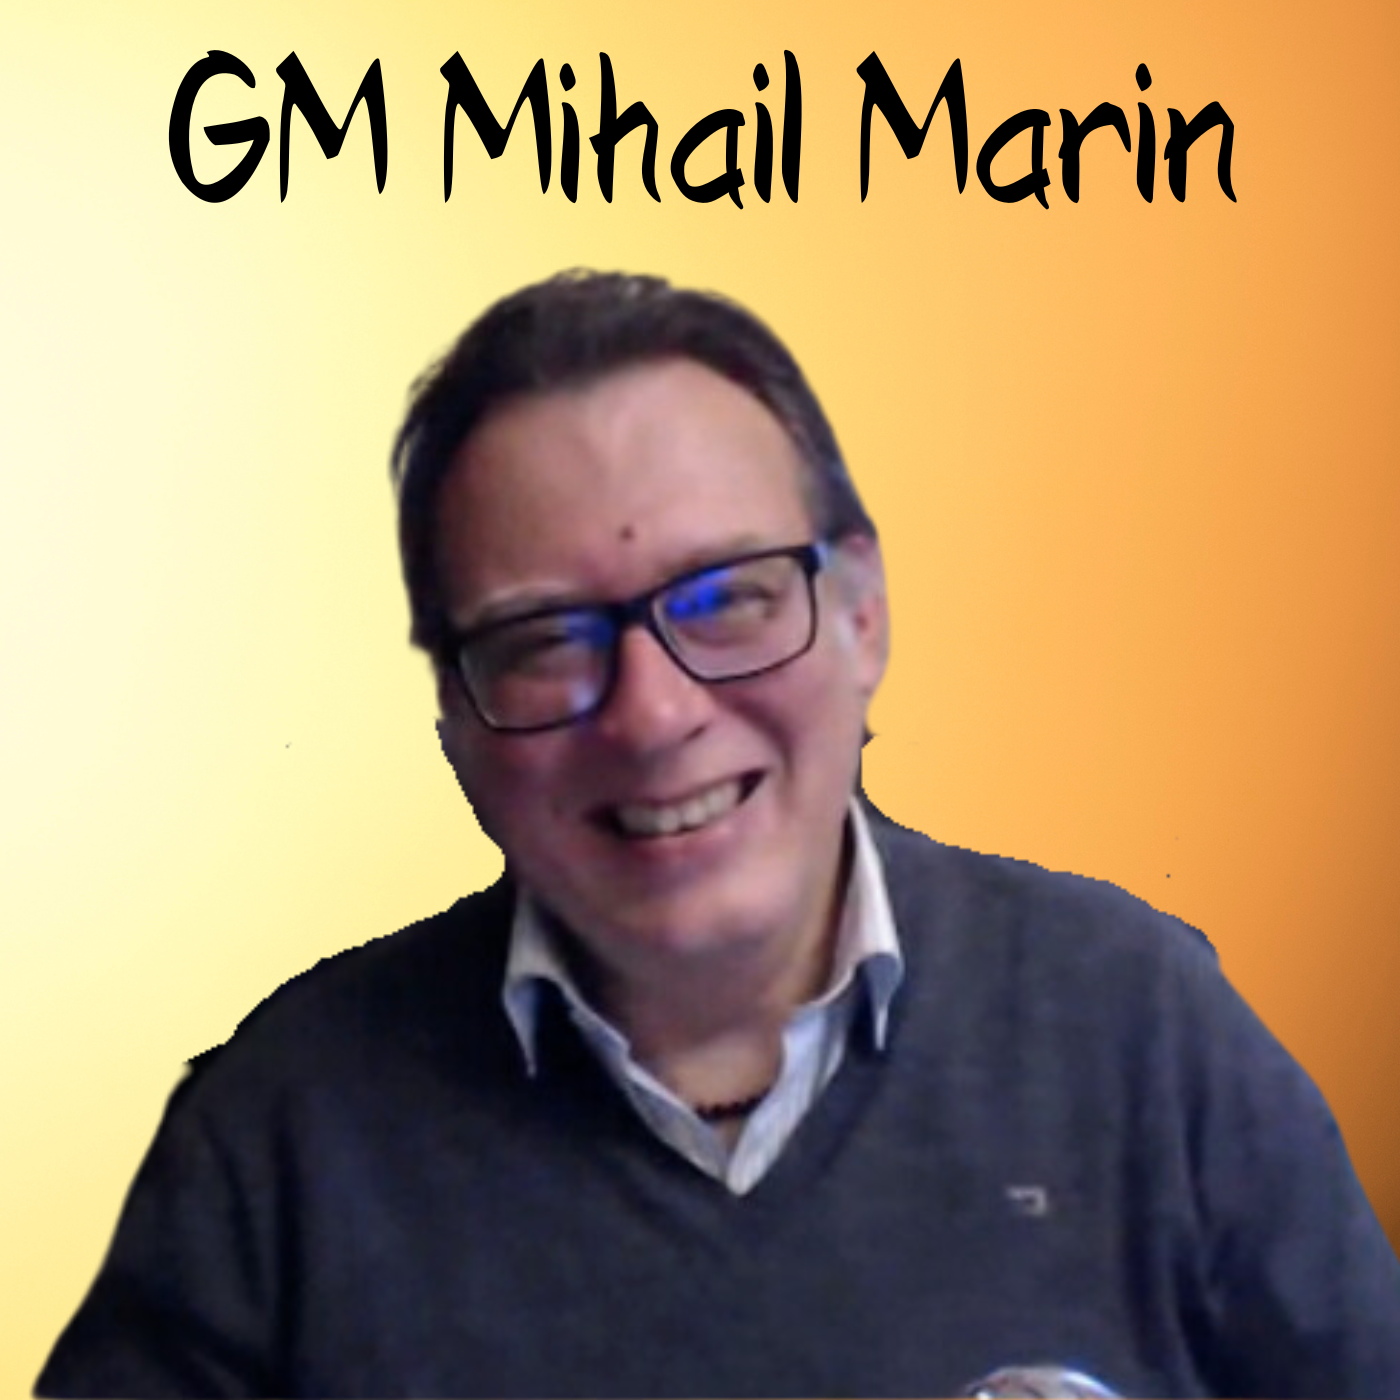 GM Mihail Marin über seine Vorliebe für die alten Meister